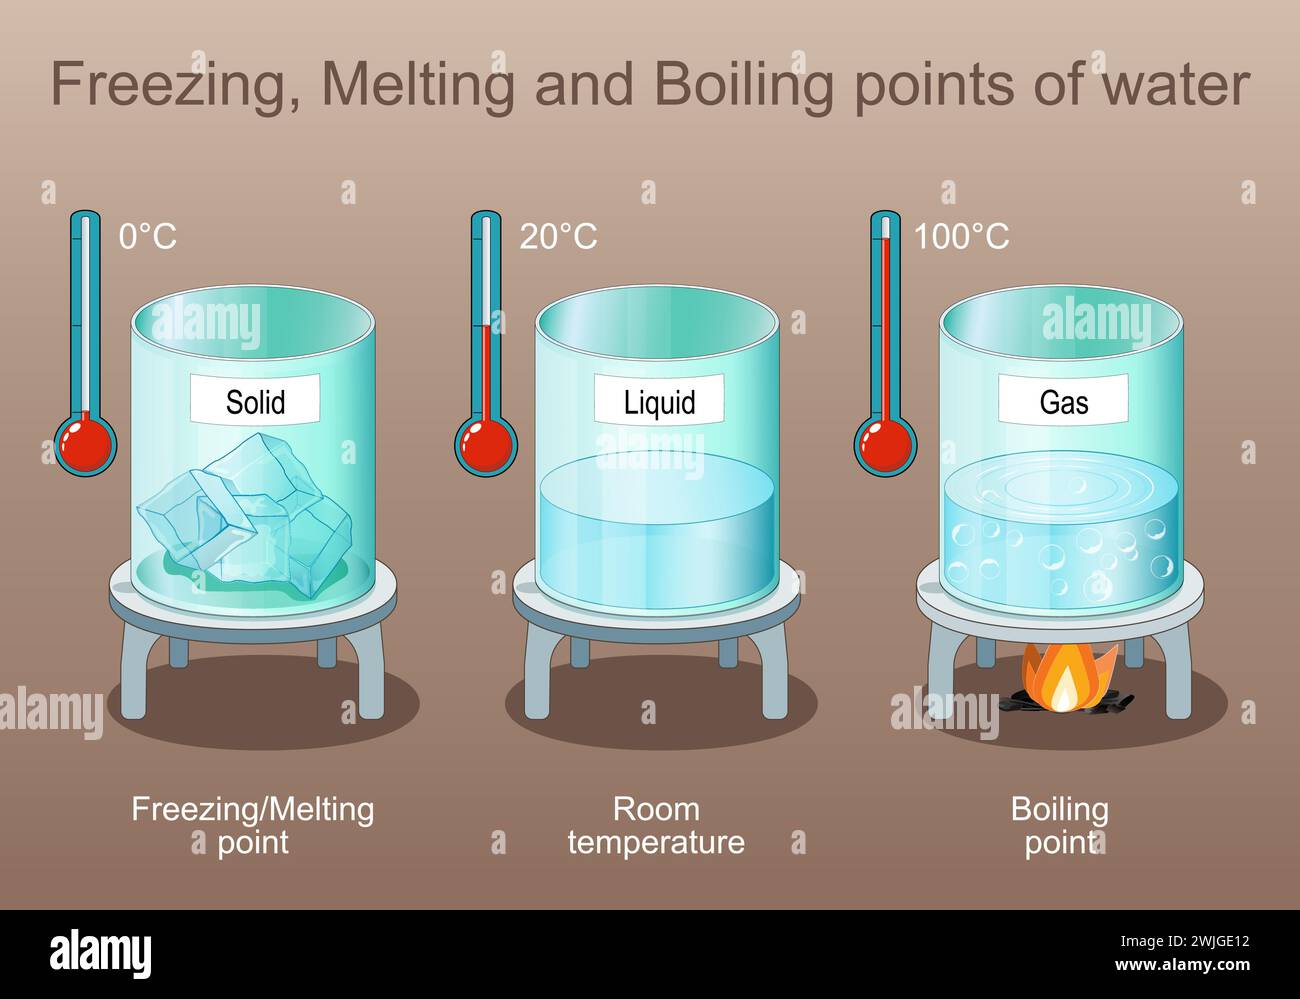 Gefrierpunkt, Schmelz- und Siedepunkt von Wasser. Zustand der Materie. Dampf ist Gas nach dem Kochen, flüssig und fest ist Eis. Poster für Grundschulbildung Stock Vektor